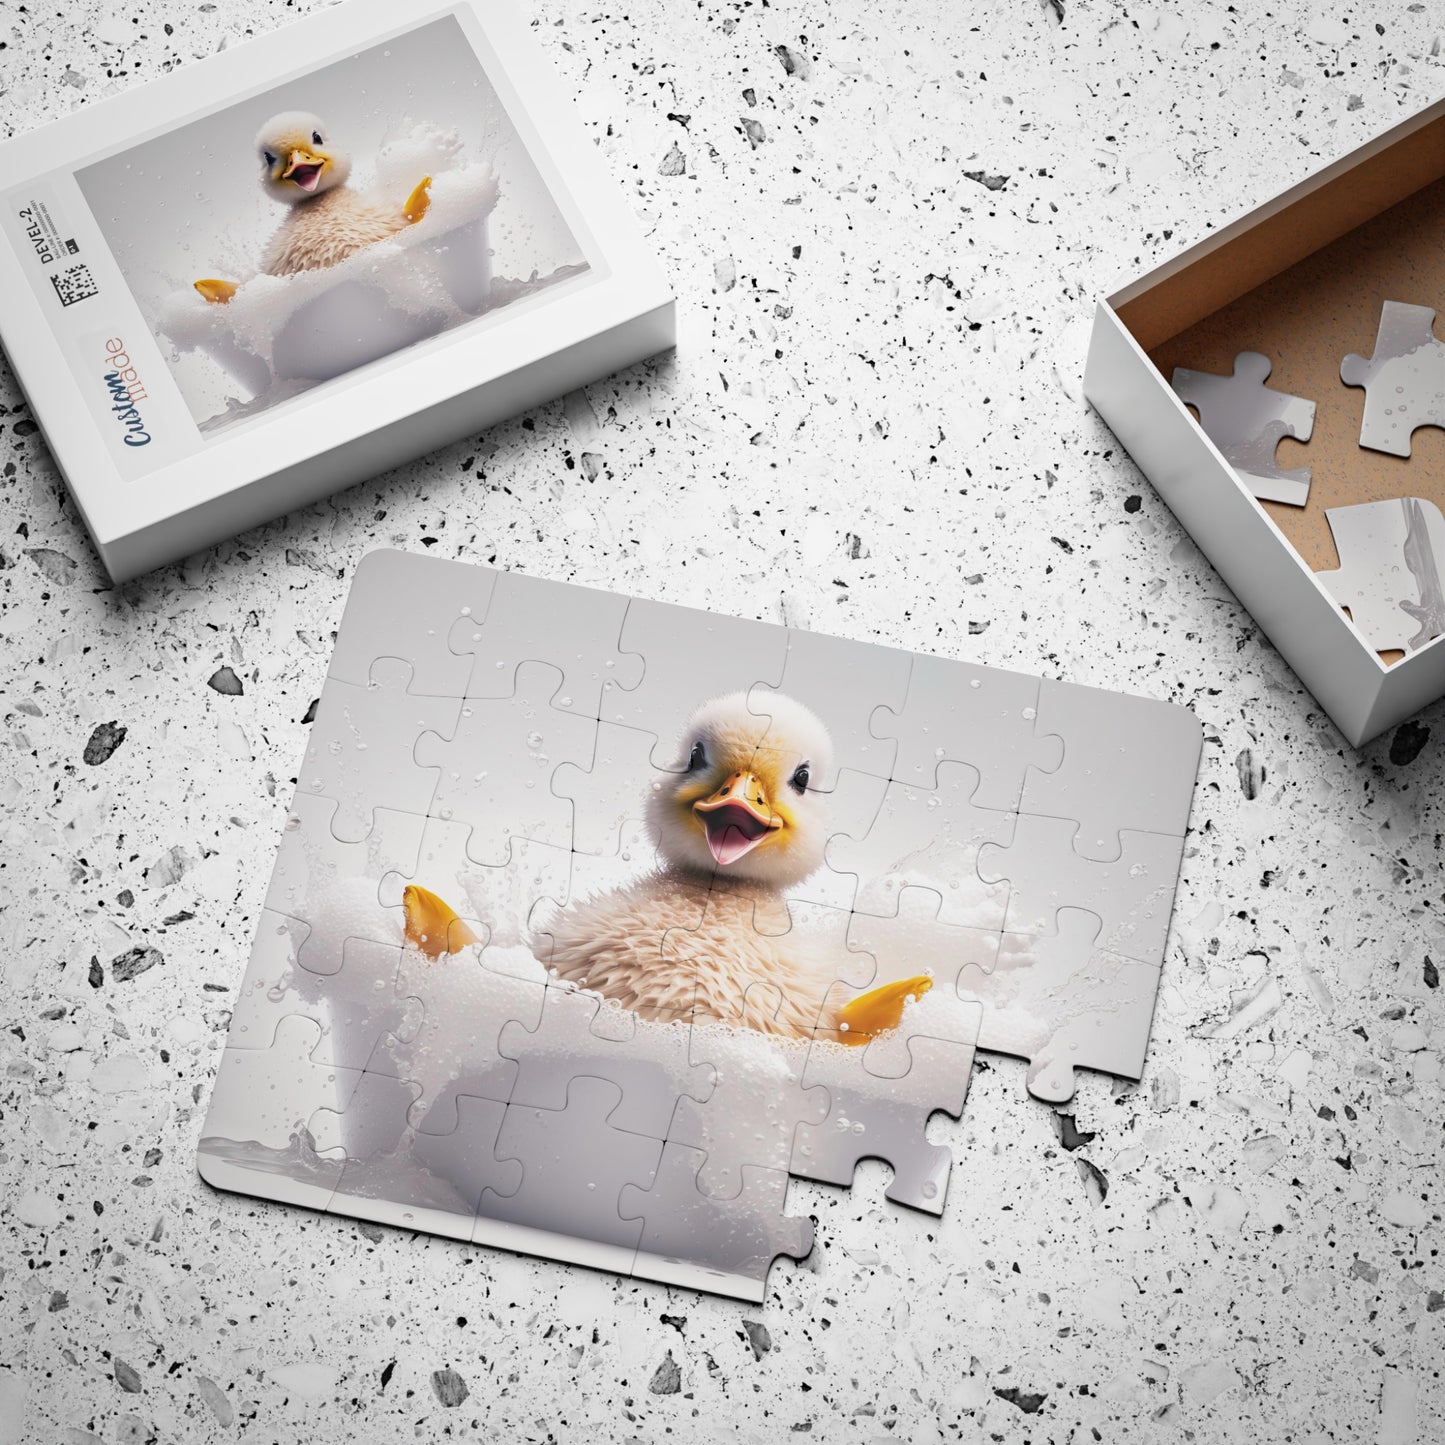 Duck Baby in Bathtub | Kids' Puzzle, 30-Piece